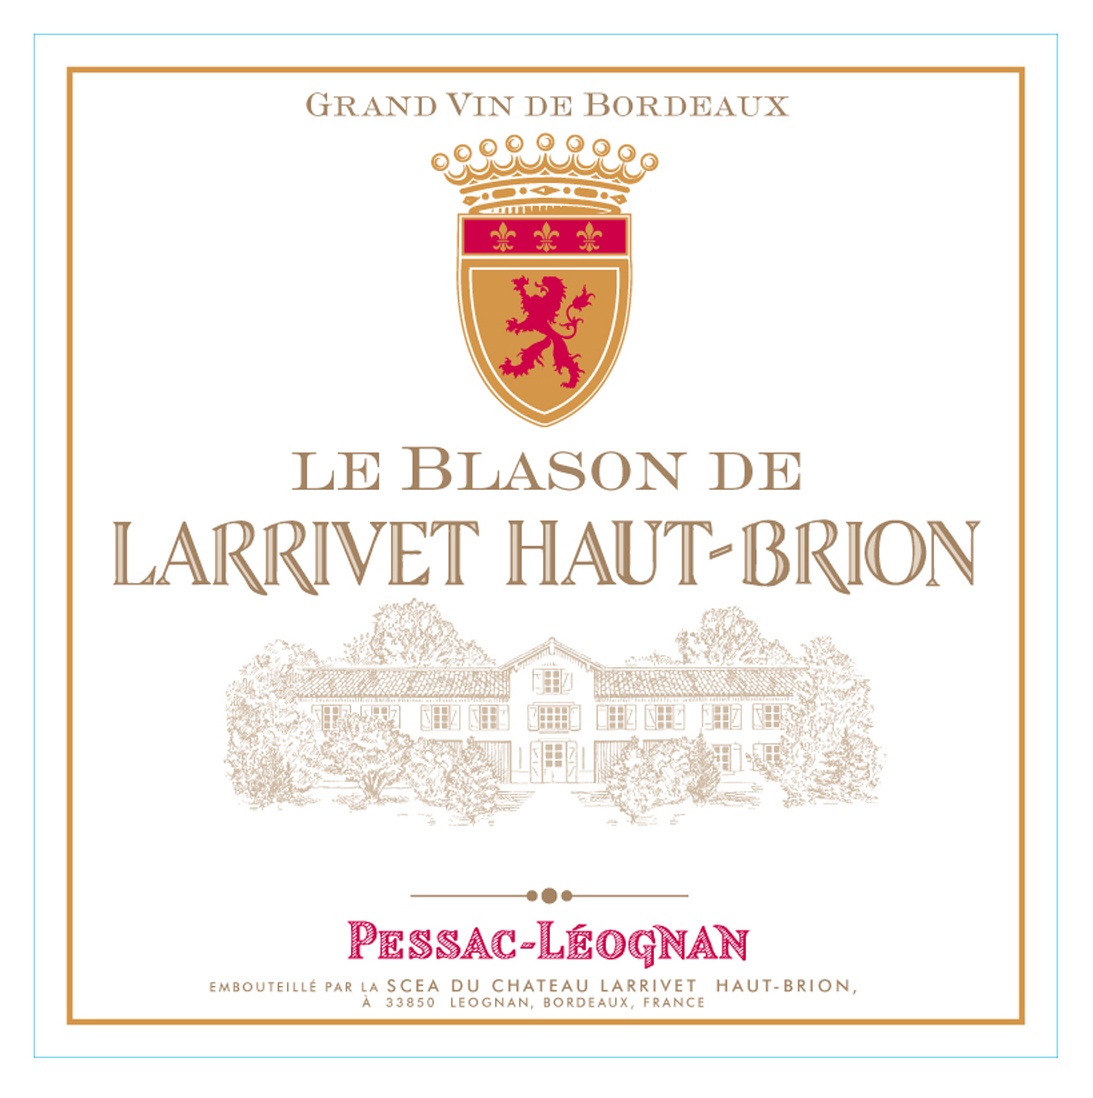 Le Blason de Larrivet Haut-Brion label